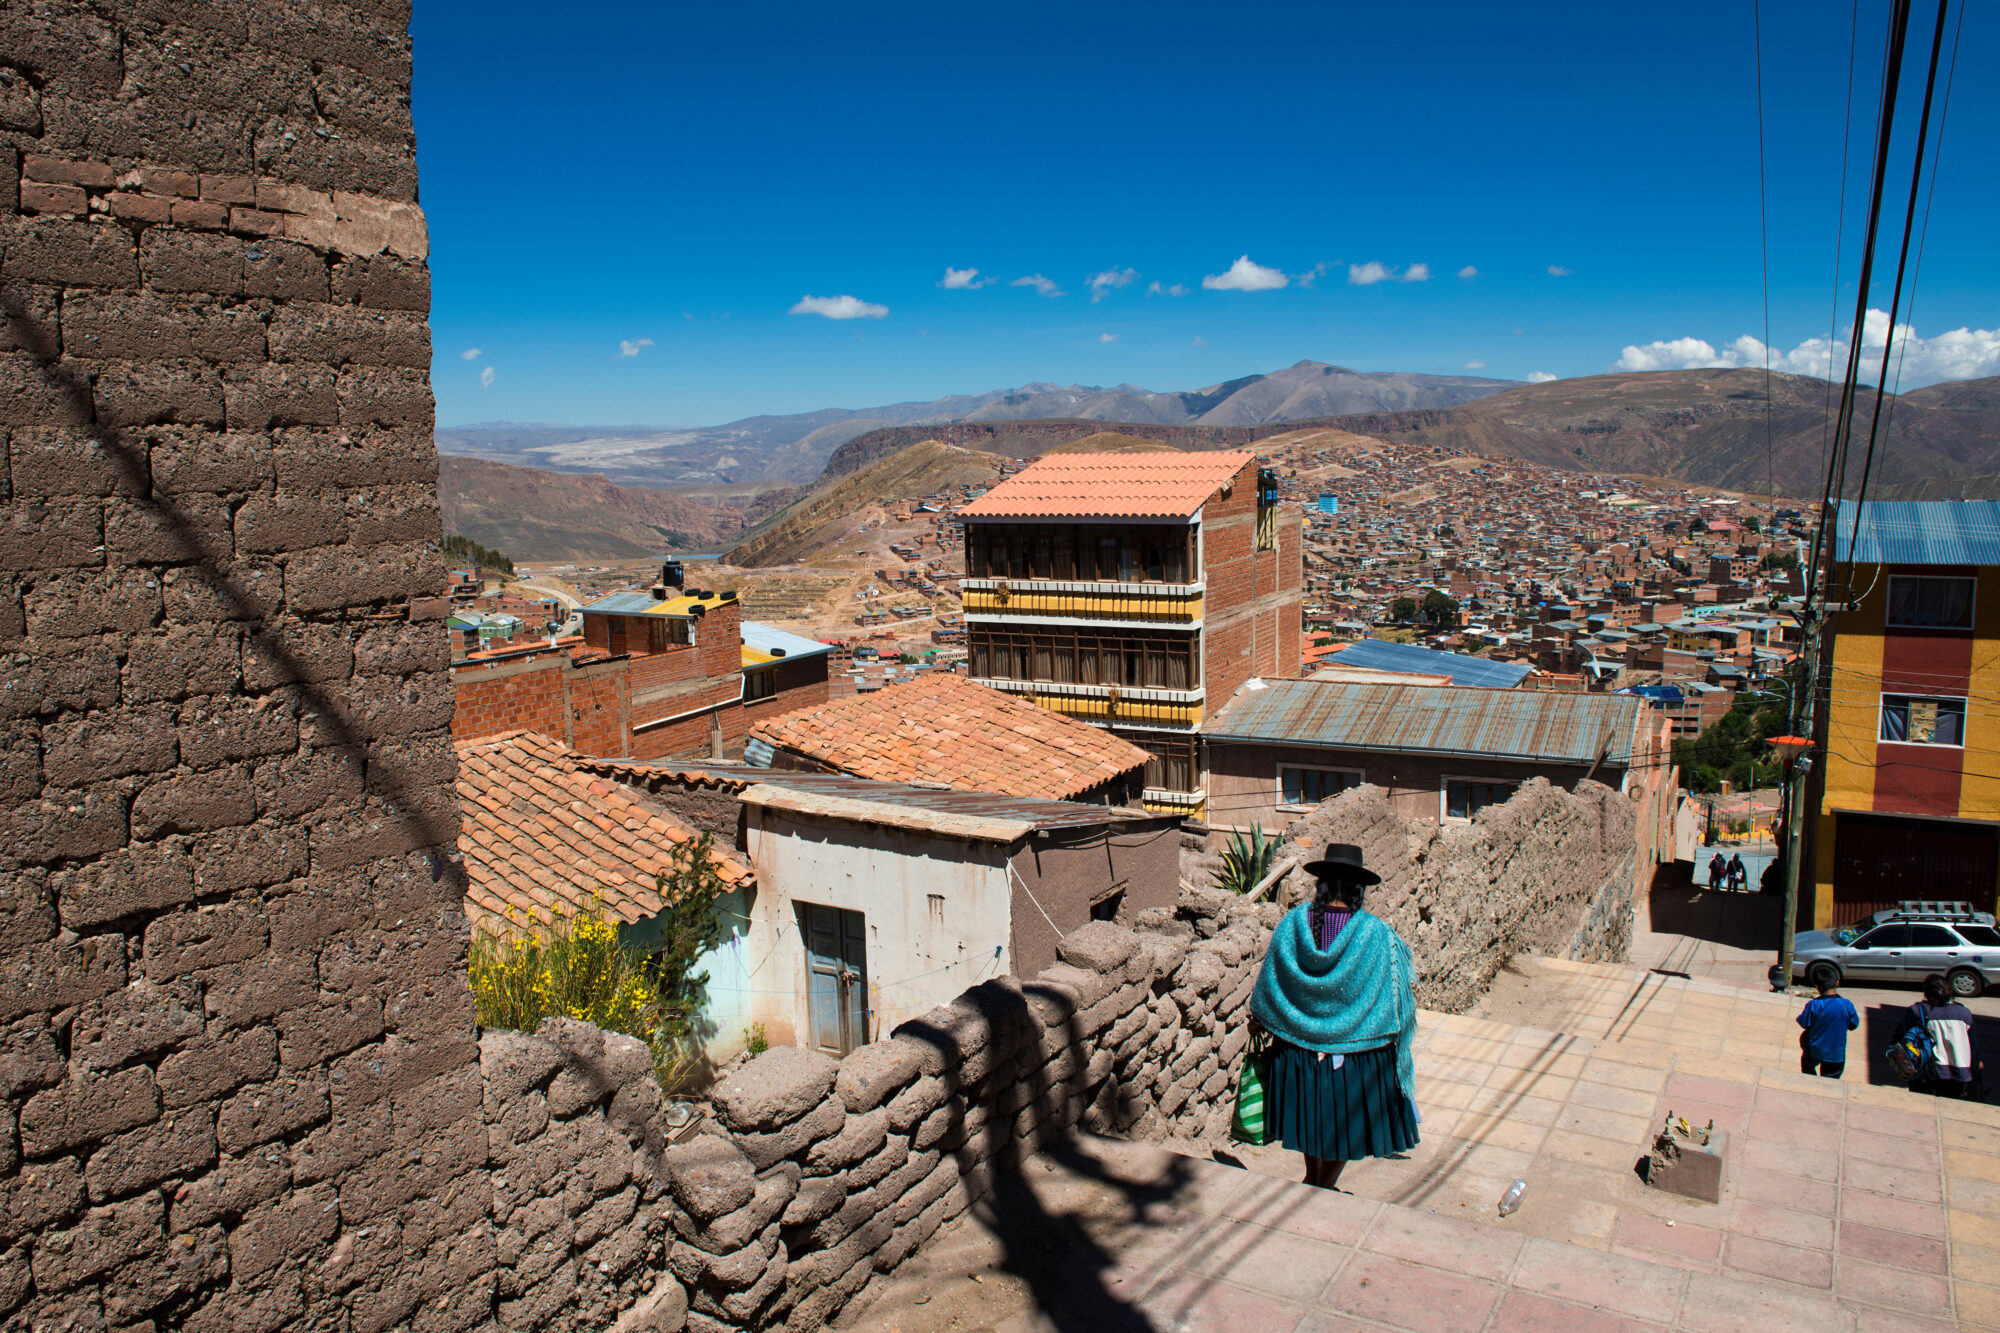 Trámites en Bolivia: Todo lo que necesitas saber para gestionar tus documentos